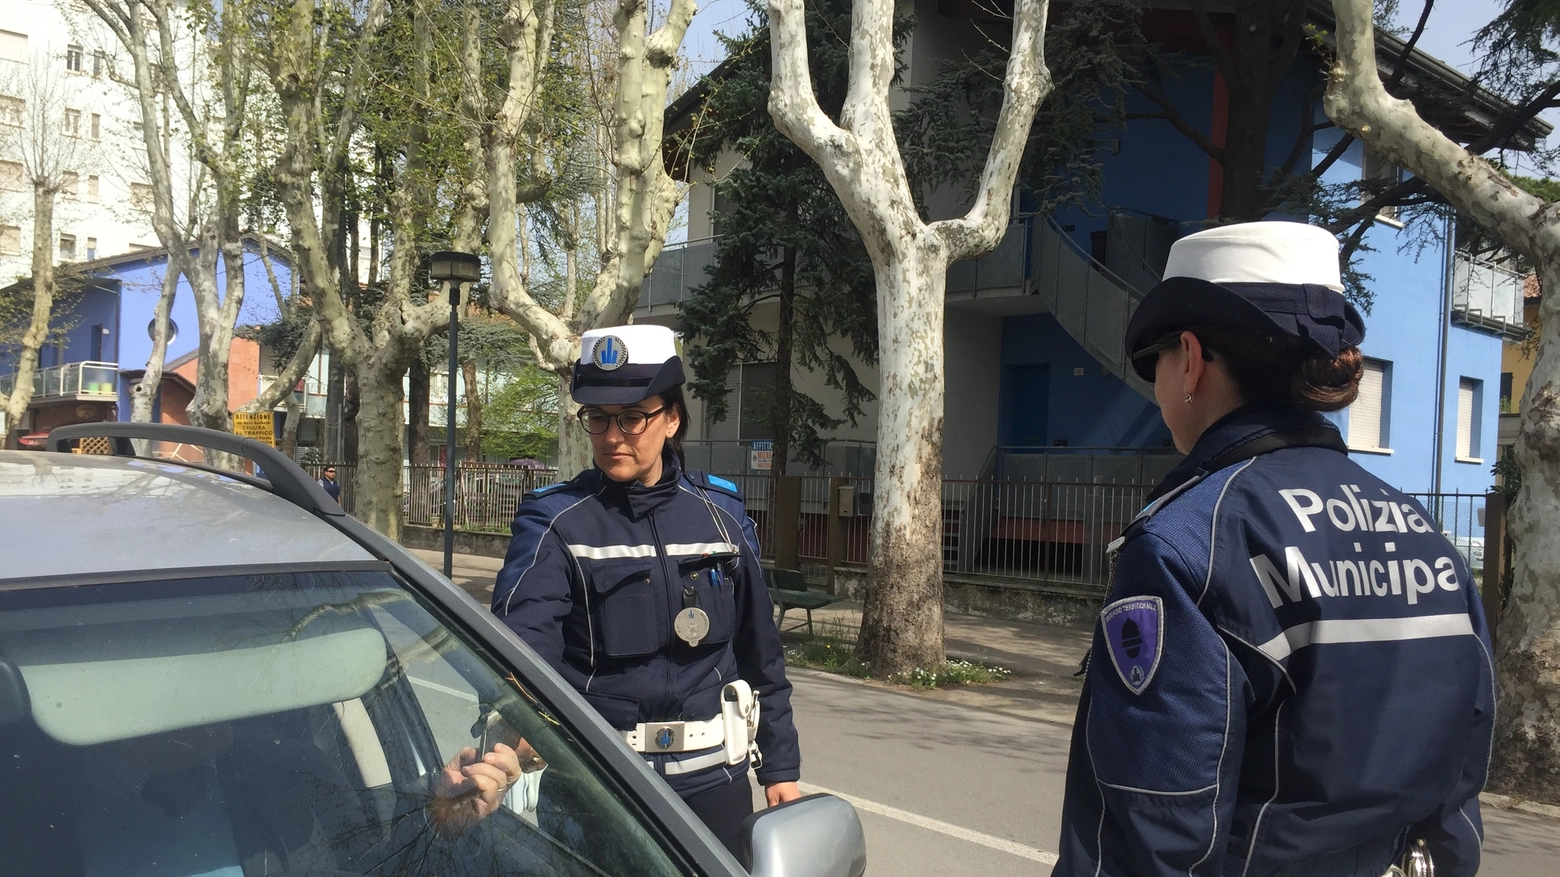 La polizia municipale di Cesenatico sanziona i furbetti alla guida col telefonino 